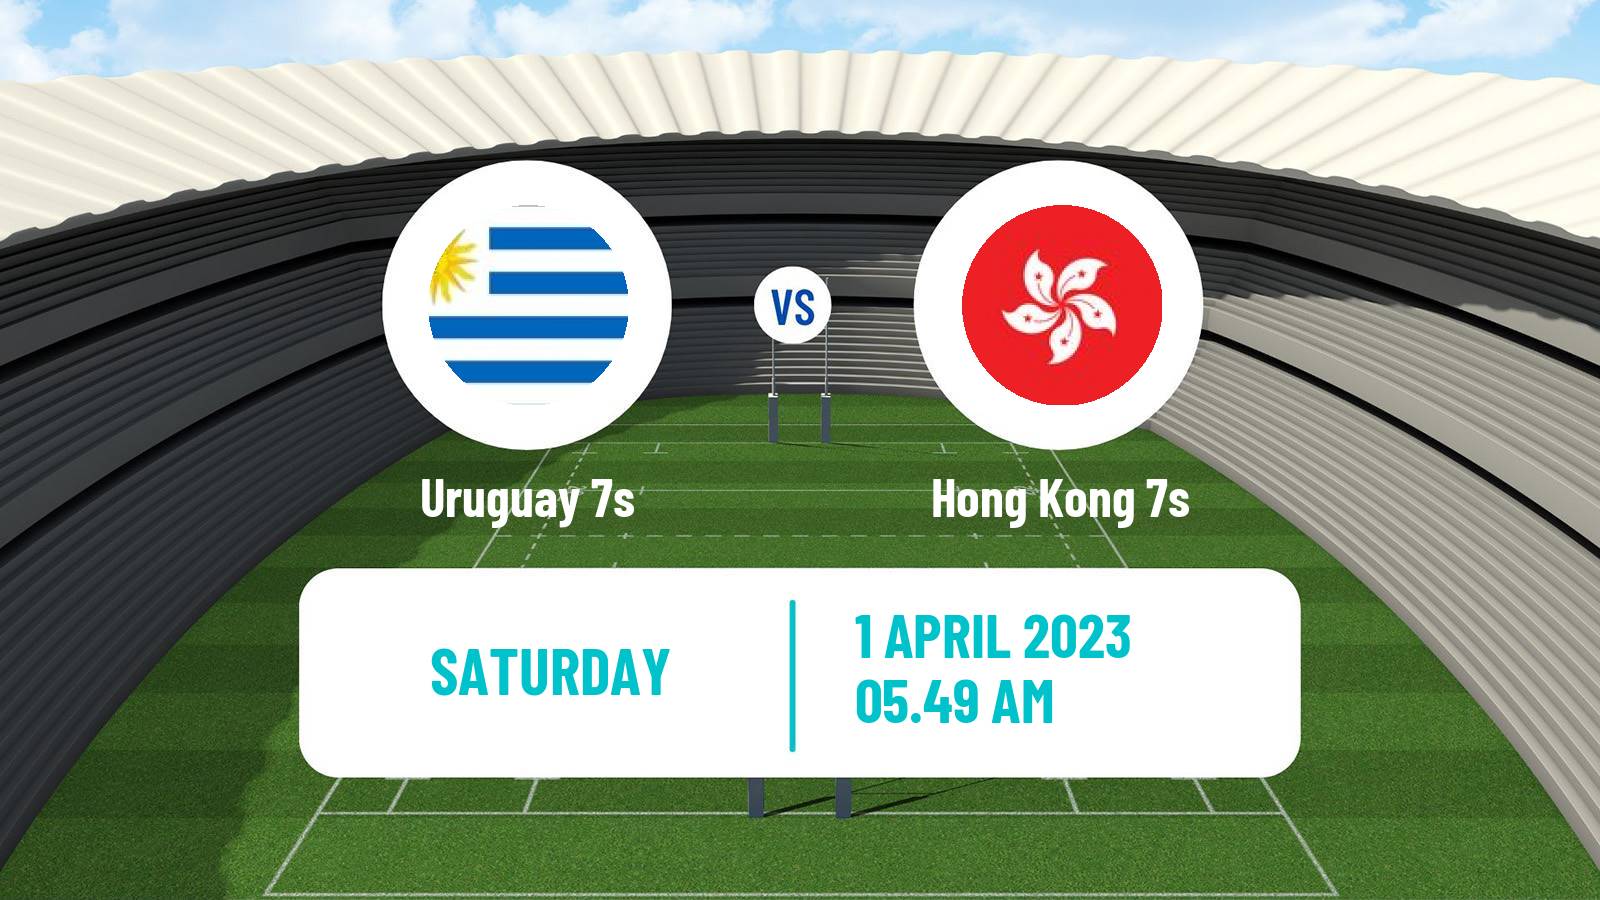 Rugby union Sevens World Series - Hong Kong 2 Uruguay 7s - Hong Kong 7s